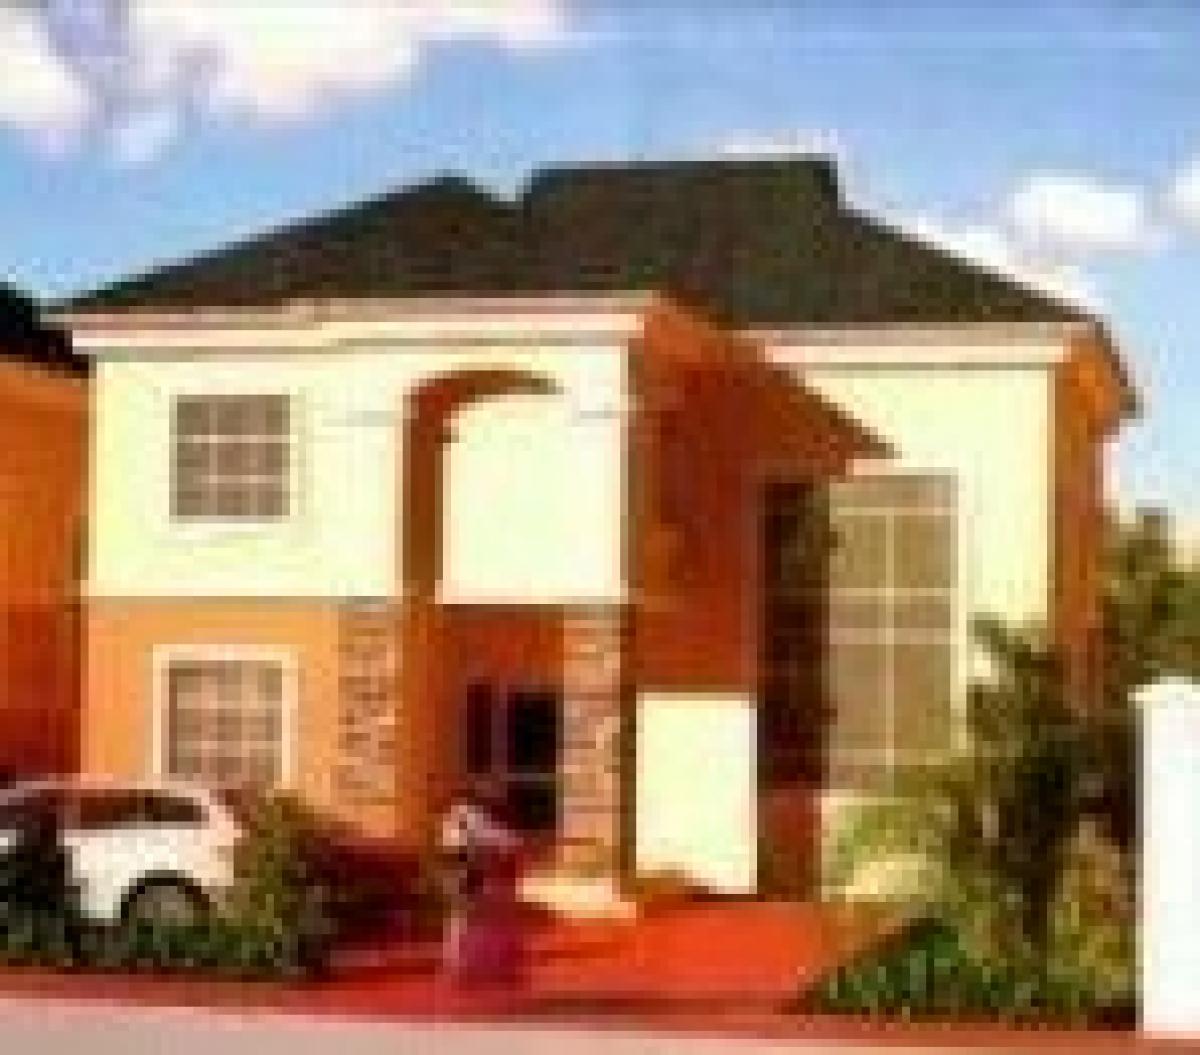 Picture of Duplex For Sale in Lagos, Lagos, Nigeria